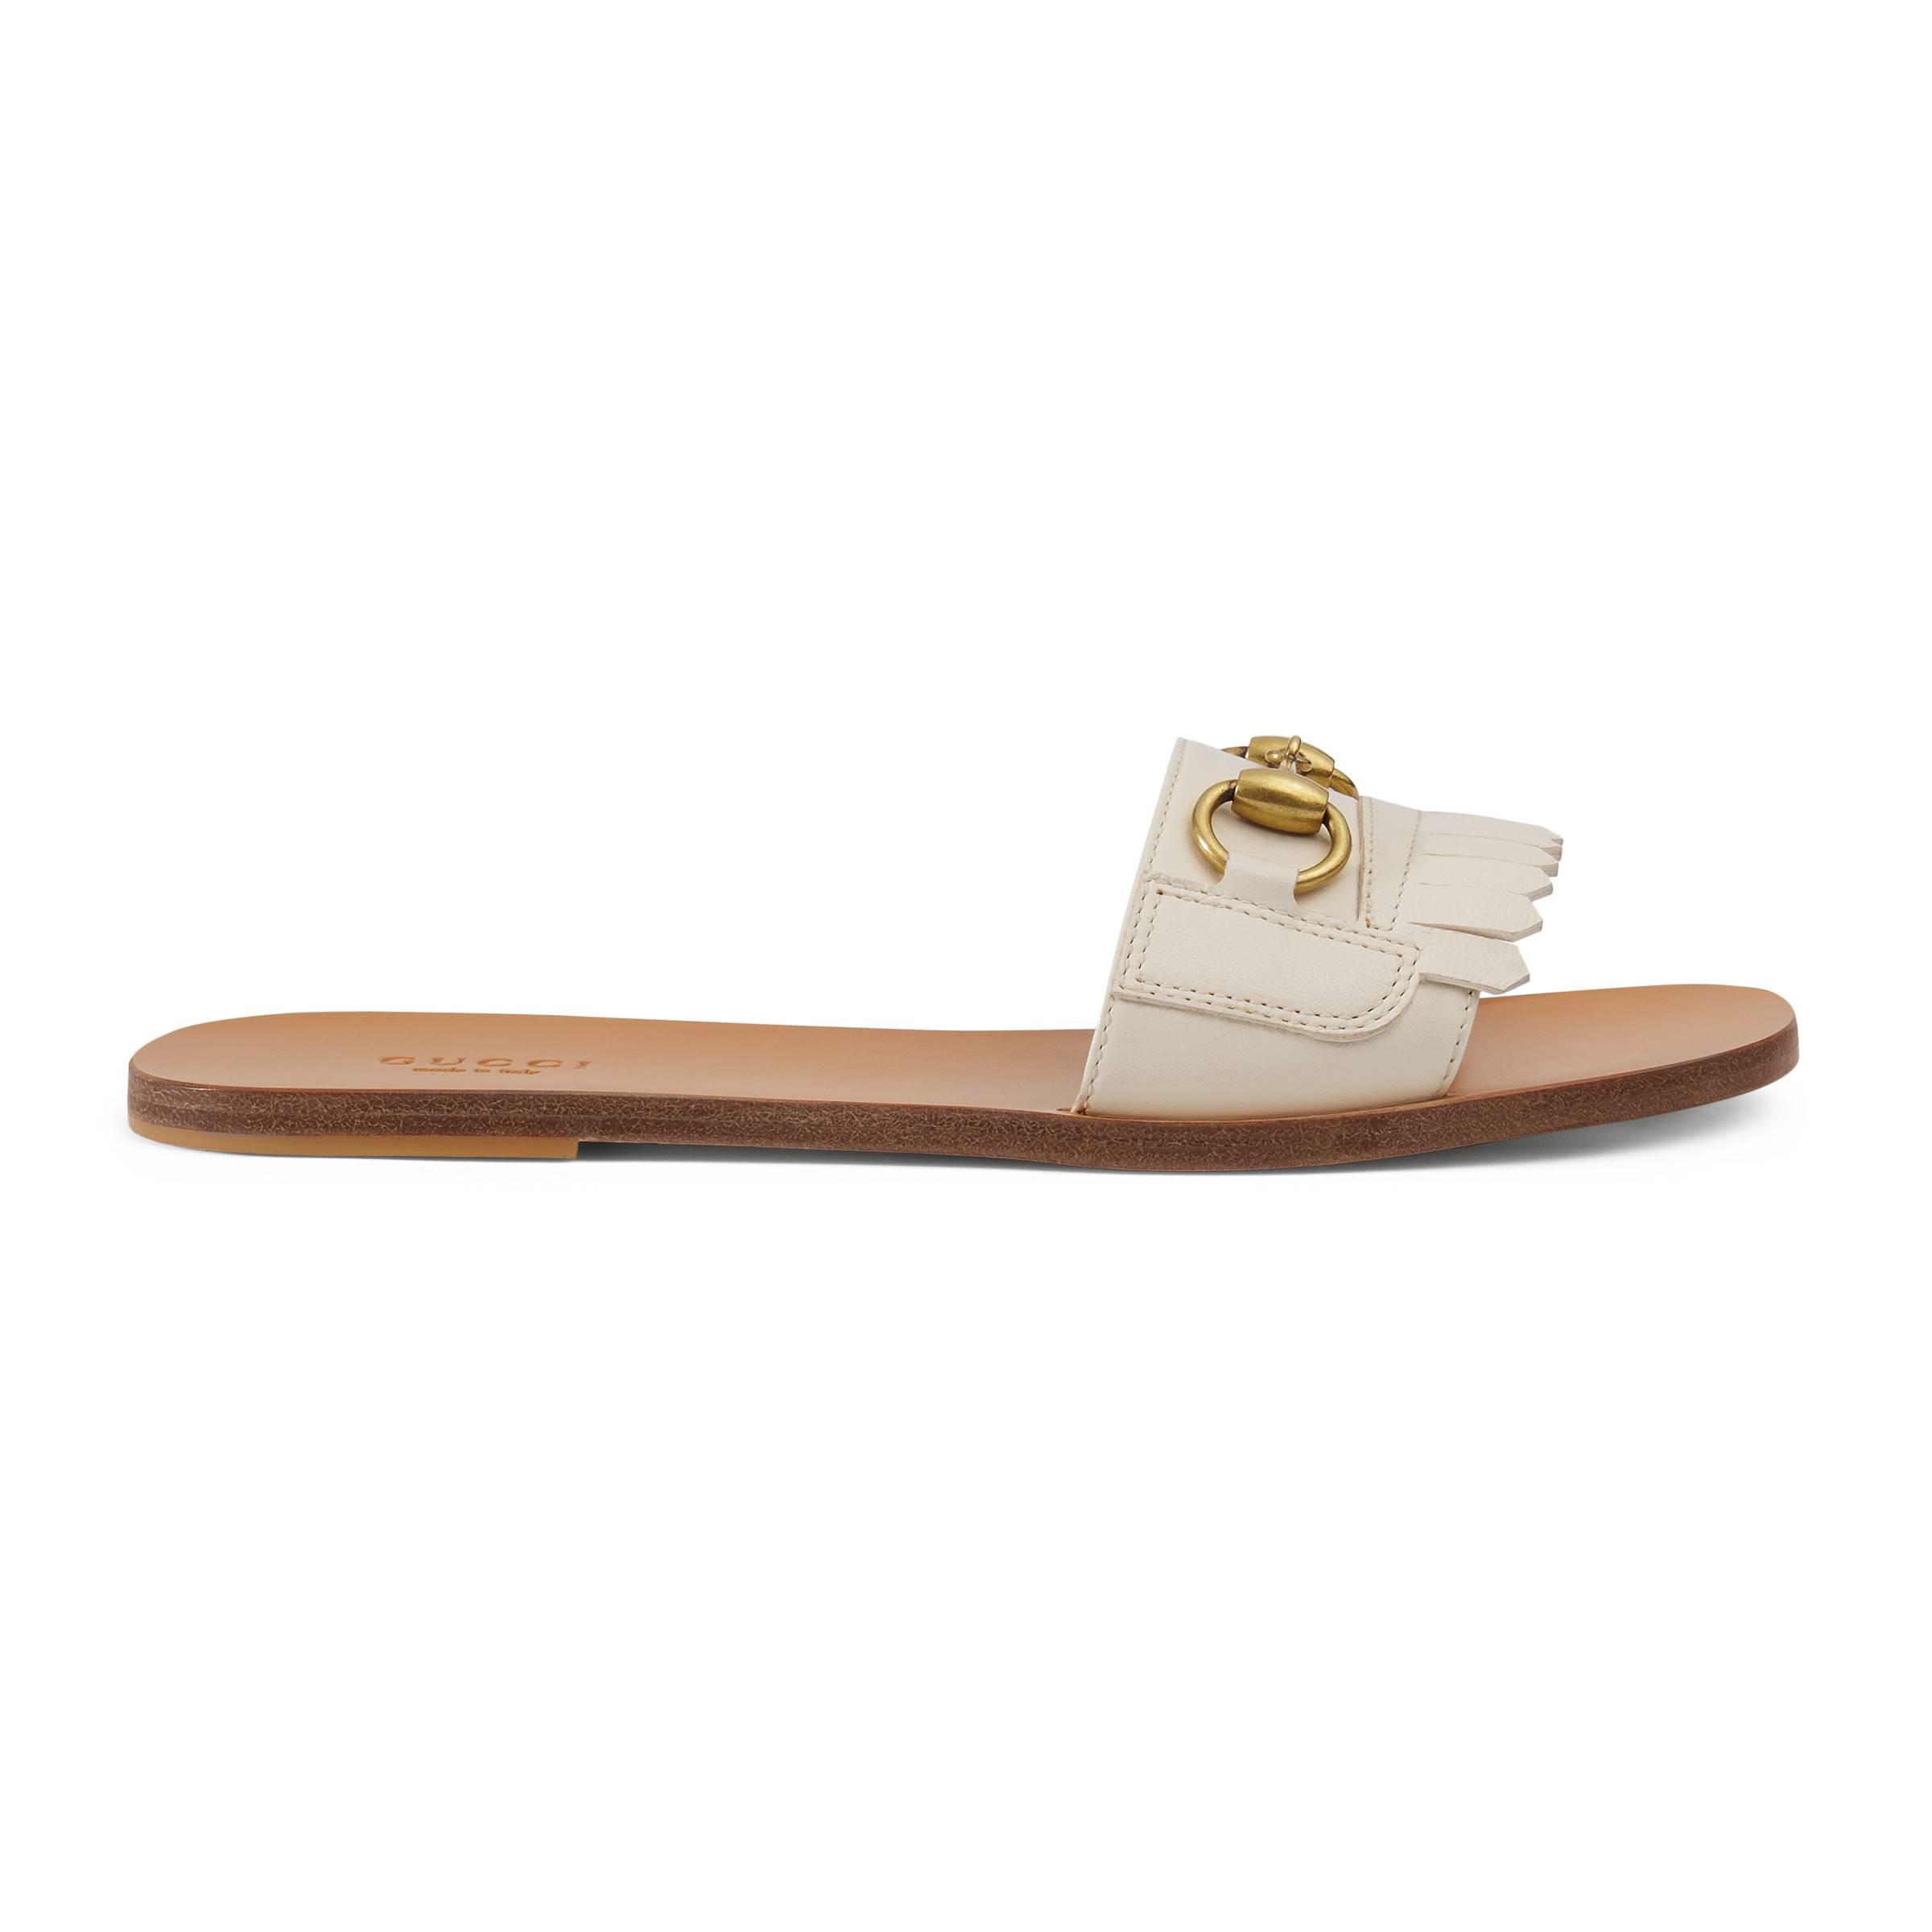 Gucci Fringe Leather Horsebit Slide in White - Lyst